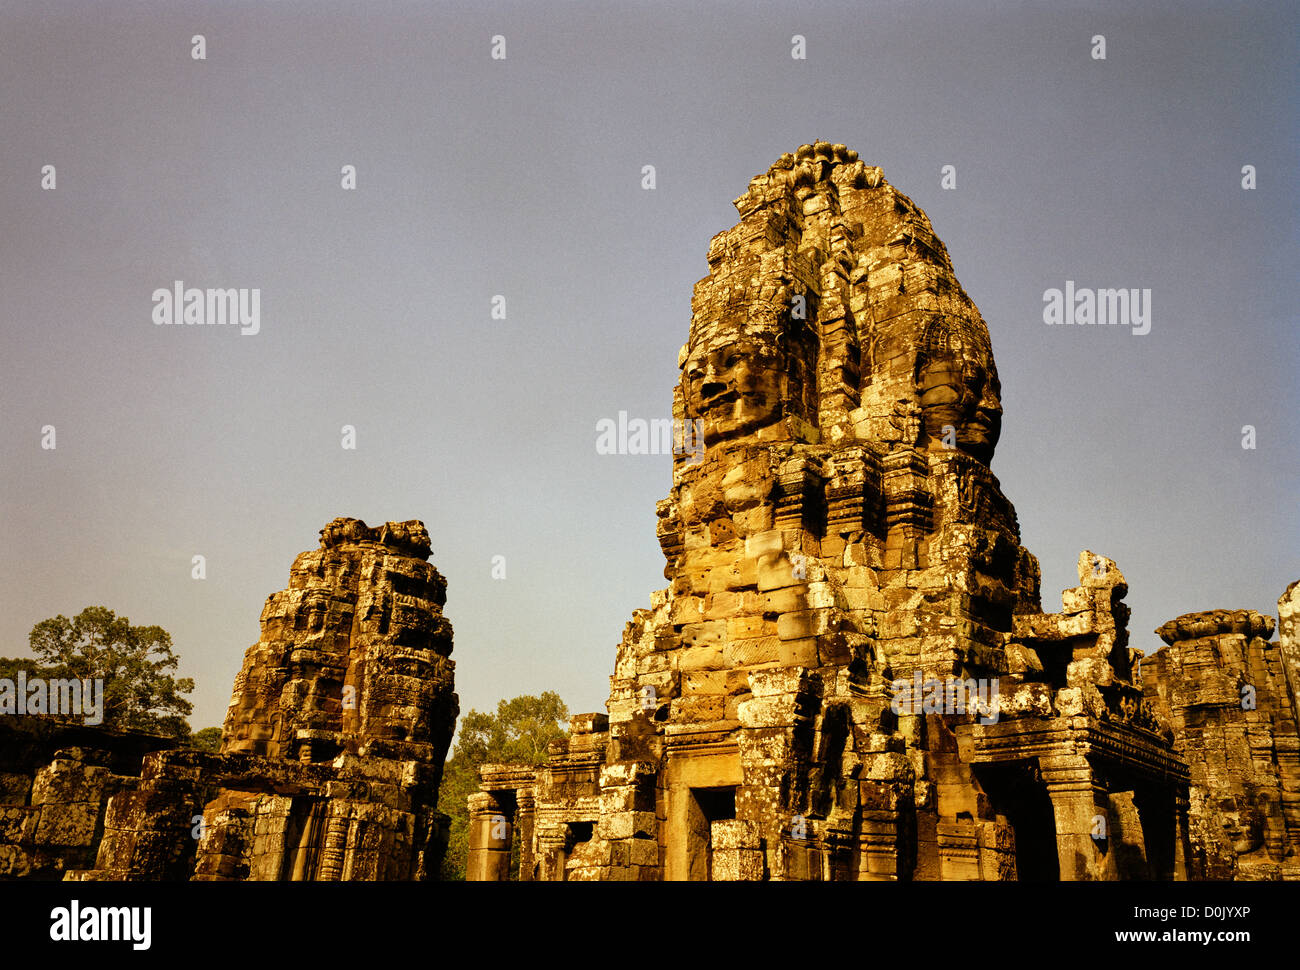 Nella giungla è l'architettura Khmer del Bayon di Angkor Thom presso i templi di Angkor in Cambogia nel sud-est asiatico. Storia della Cambogia Travel Foto Stock